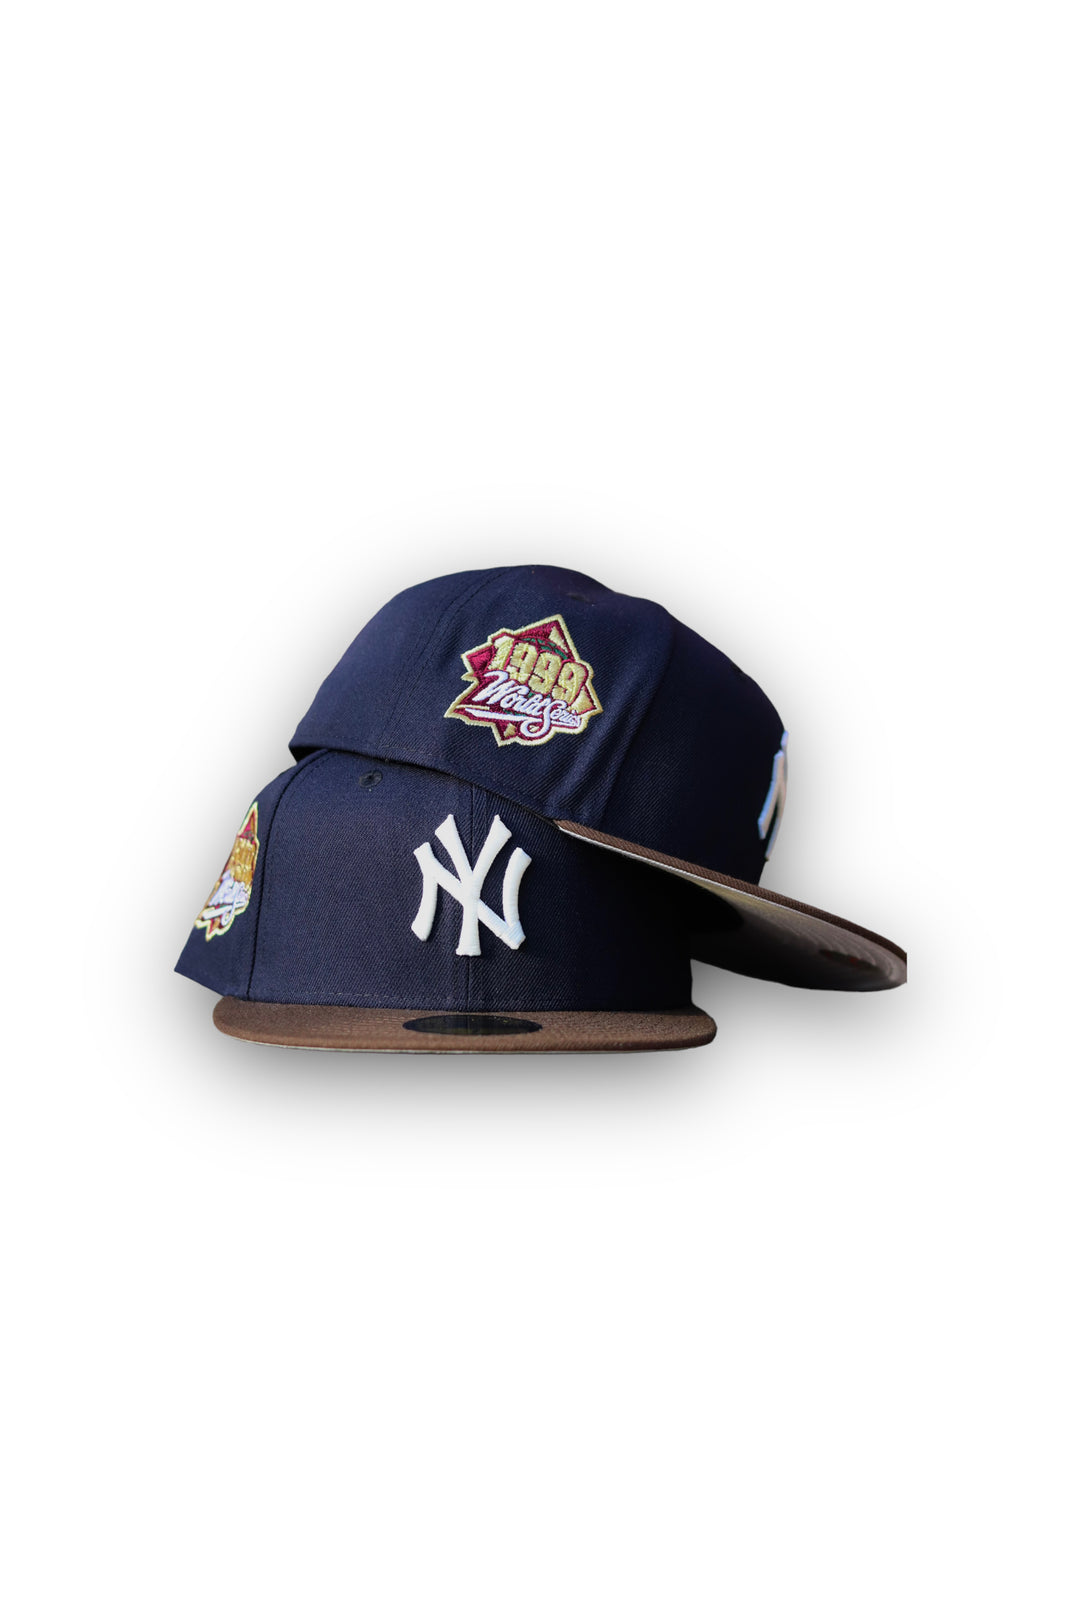 Yankees de Nueva York '99